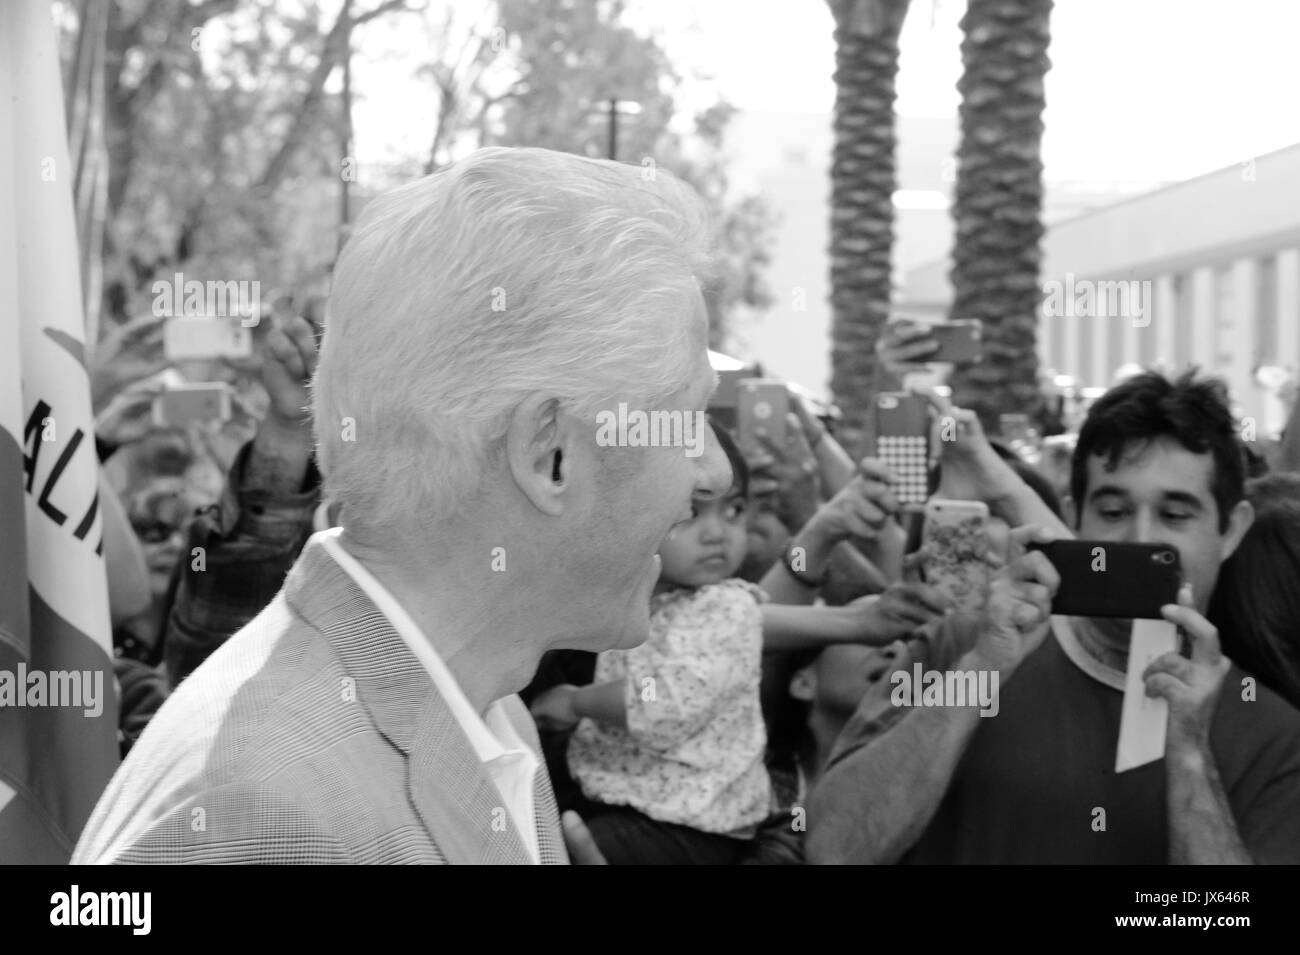 Le président Bill Clinton a été photographié par des fans comme il arrive à la campagne d'Hillary clinton rallye 3,2016 avril los angeles,californie. Banque D'Images